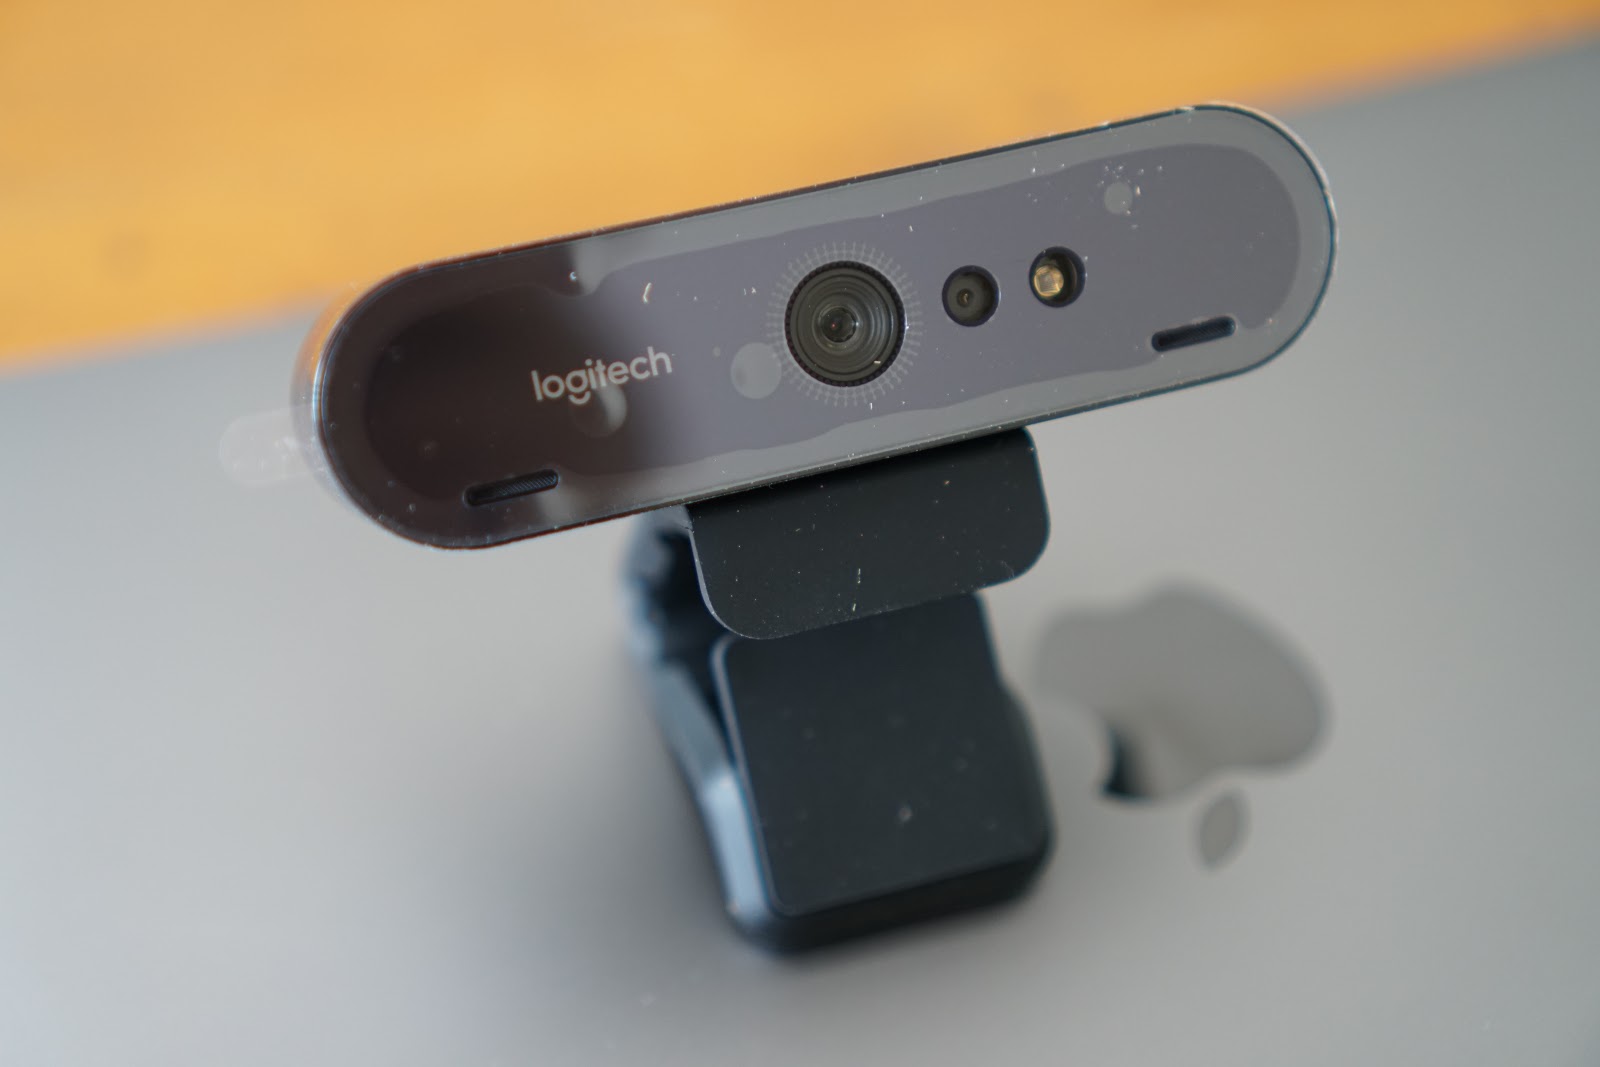 Logitech Brio 4K Webcam Review